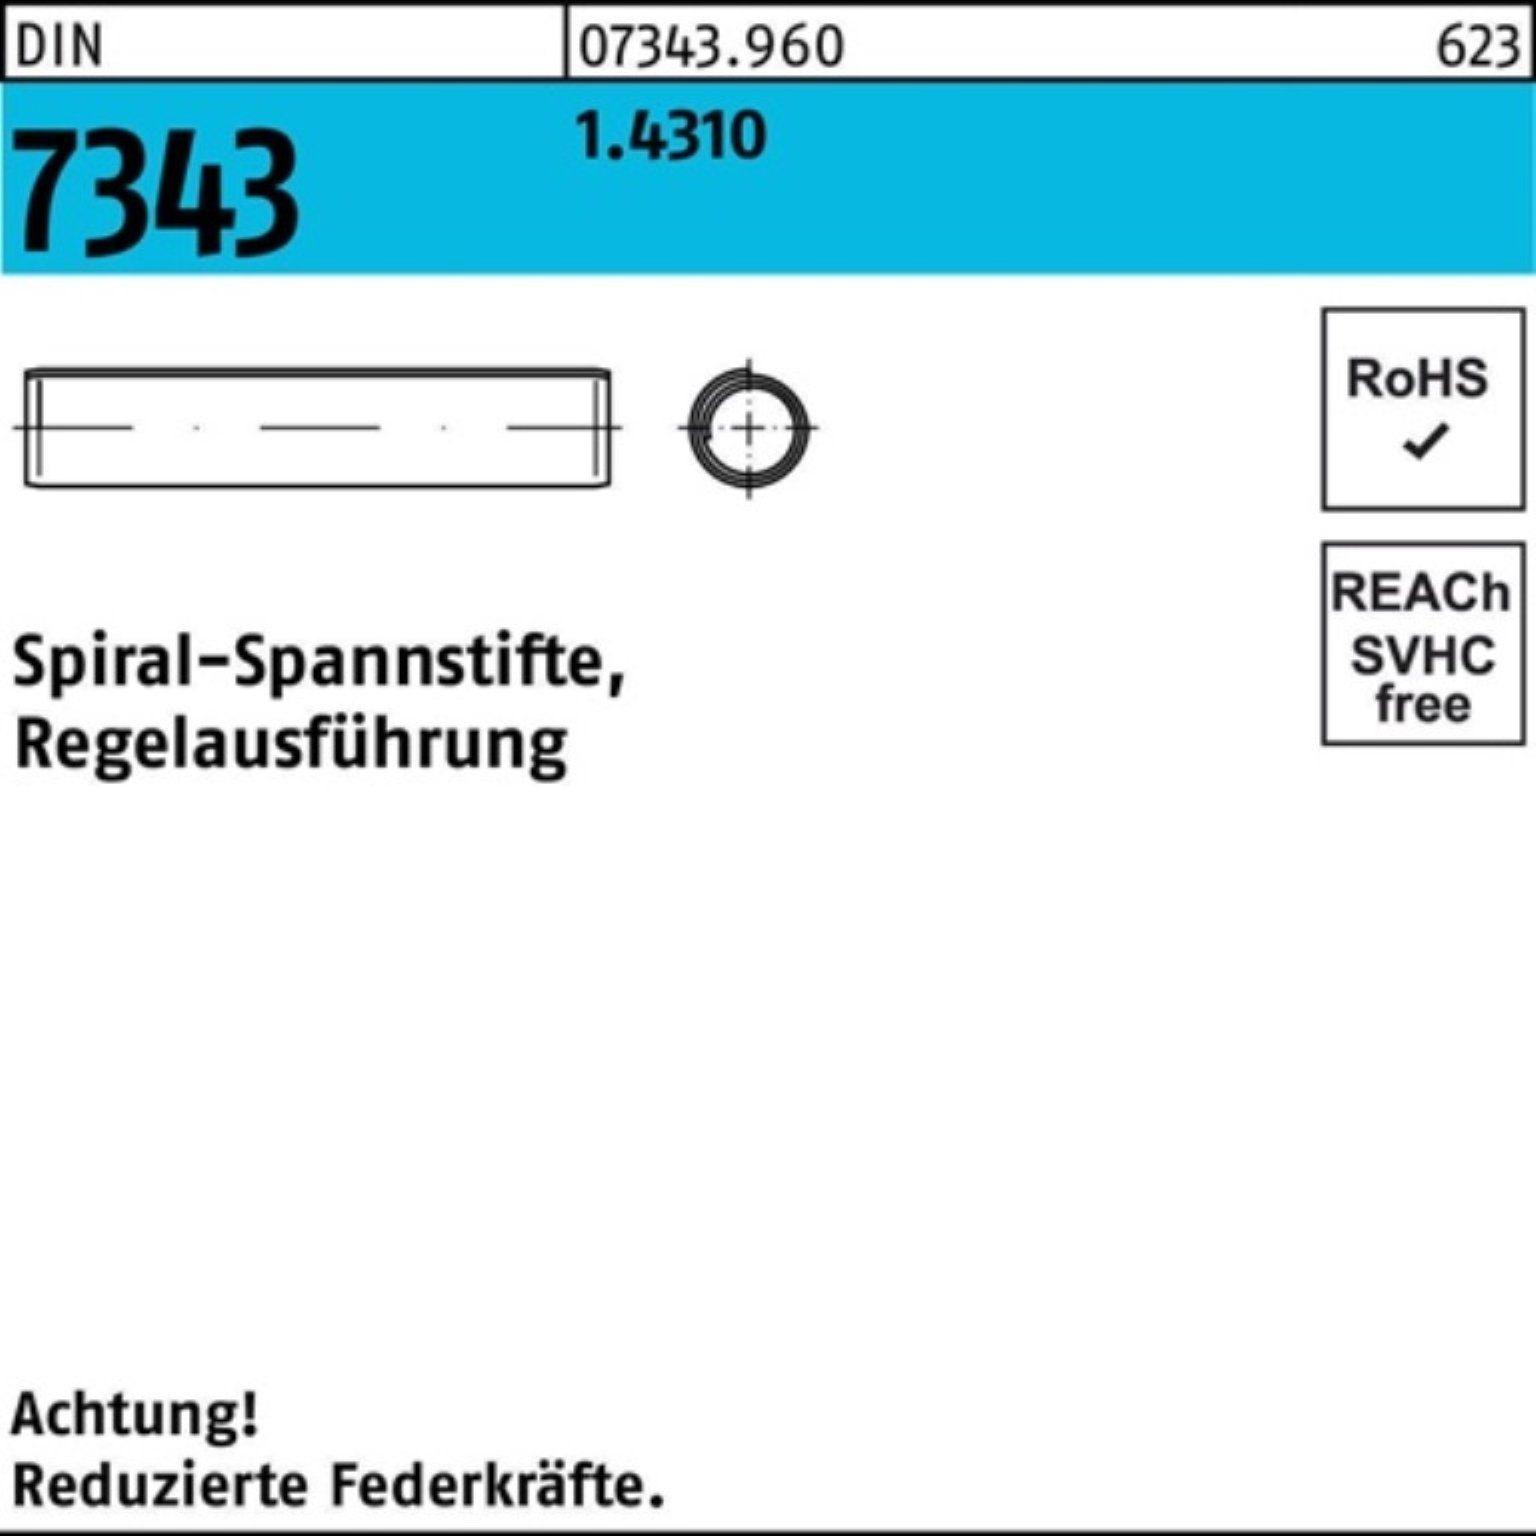 Reyher Spannstift 500er 7343/ISO 28 Pack 4x 1.4310 DIN Regelausf. Spiralspannstift 8750